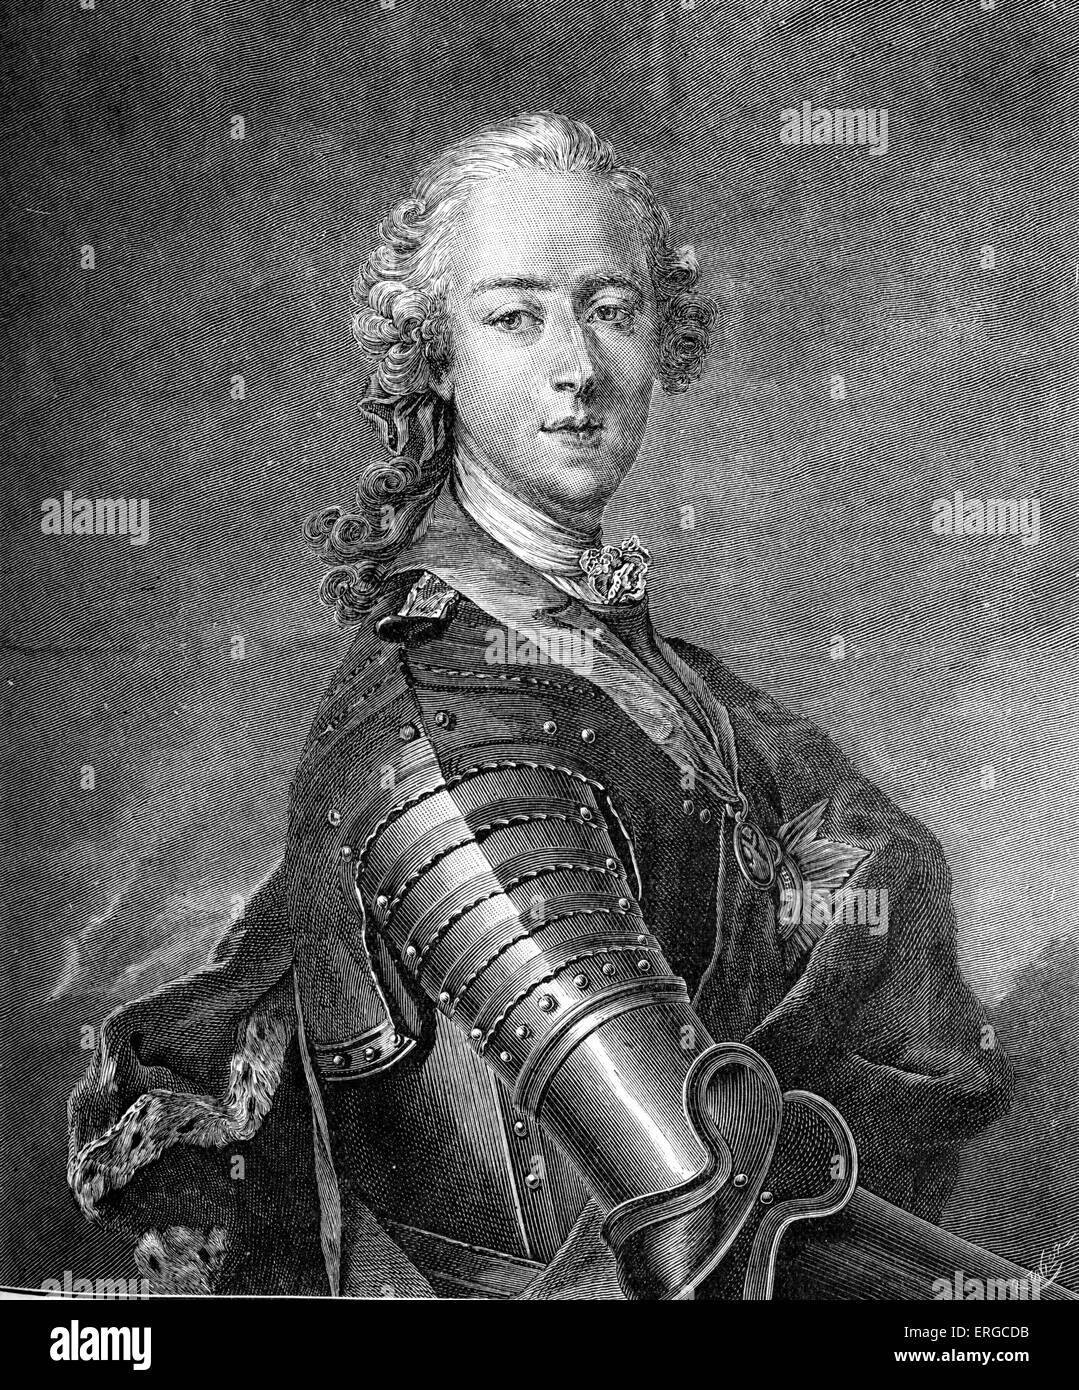 Prinz Charles Edward Stuart - nach dem Portrait von Barett, 1748. Auch bekannt als "Bonnie Prince Charlie" und die "Young Stockfoto